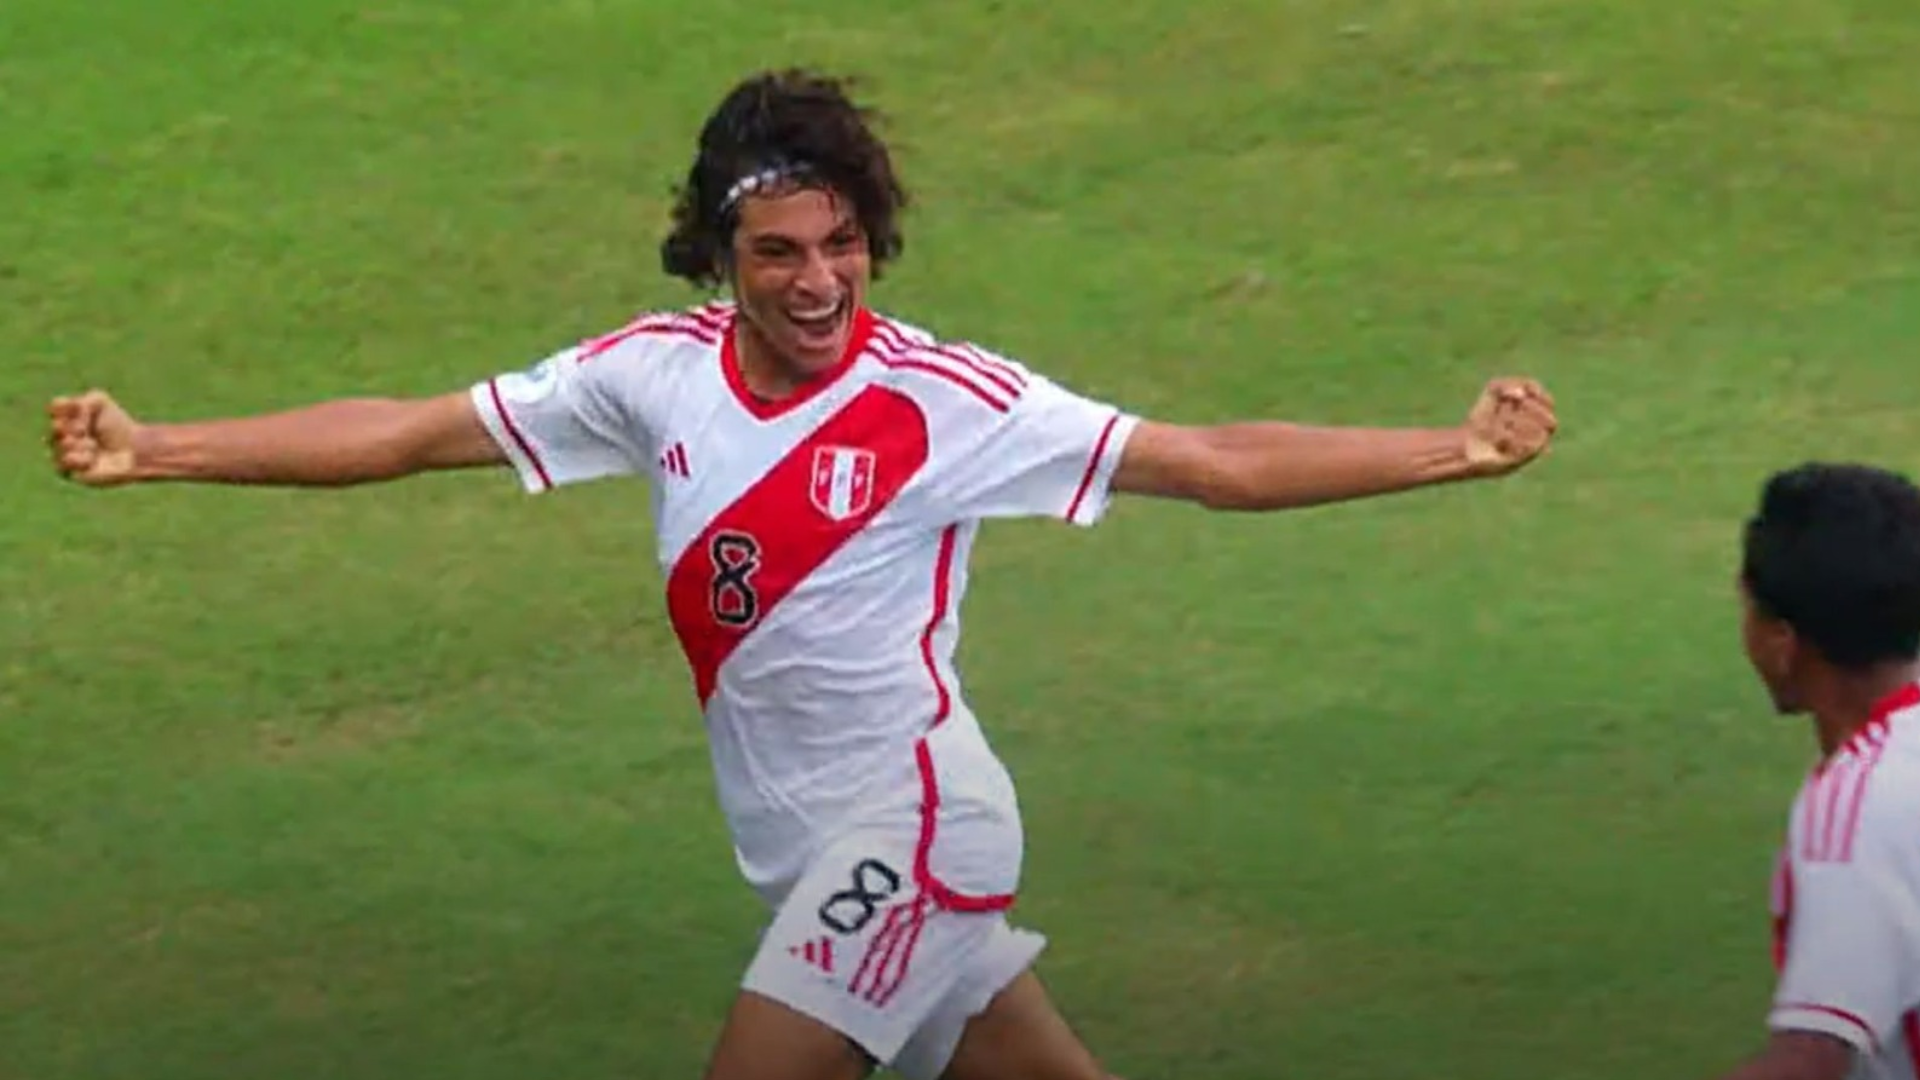 Golazo de Brascco Soyer tras contragolpe perfecto para el 1-0 de Perú vs Bolivia por Sudamericano sub 17